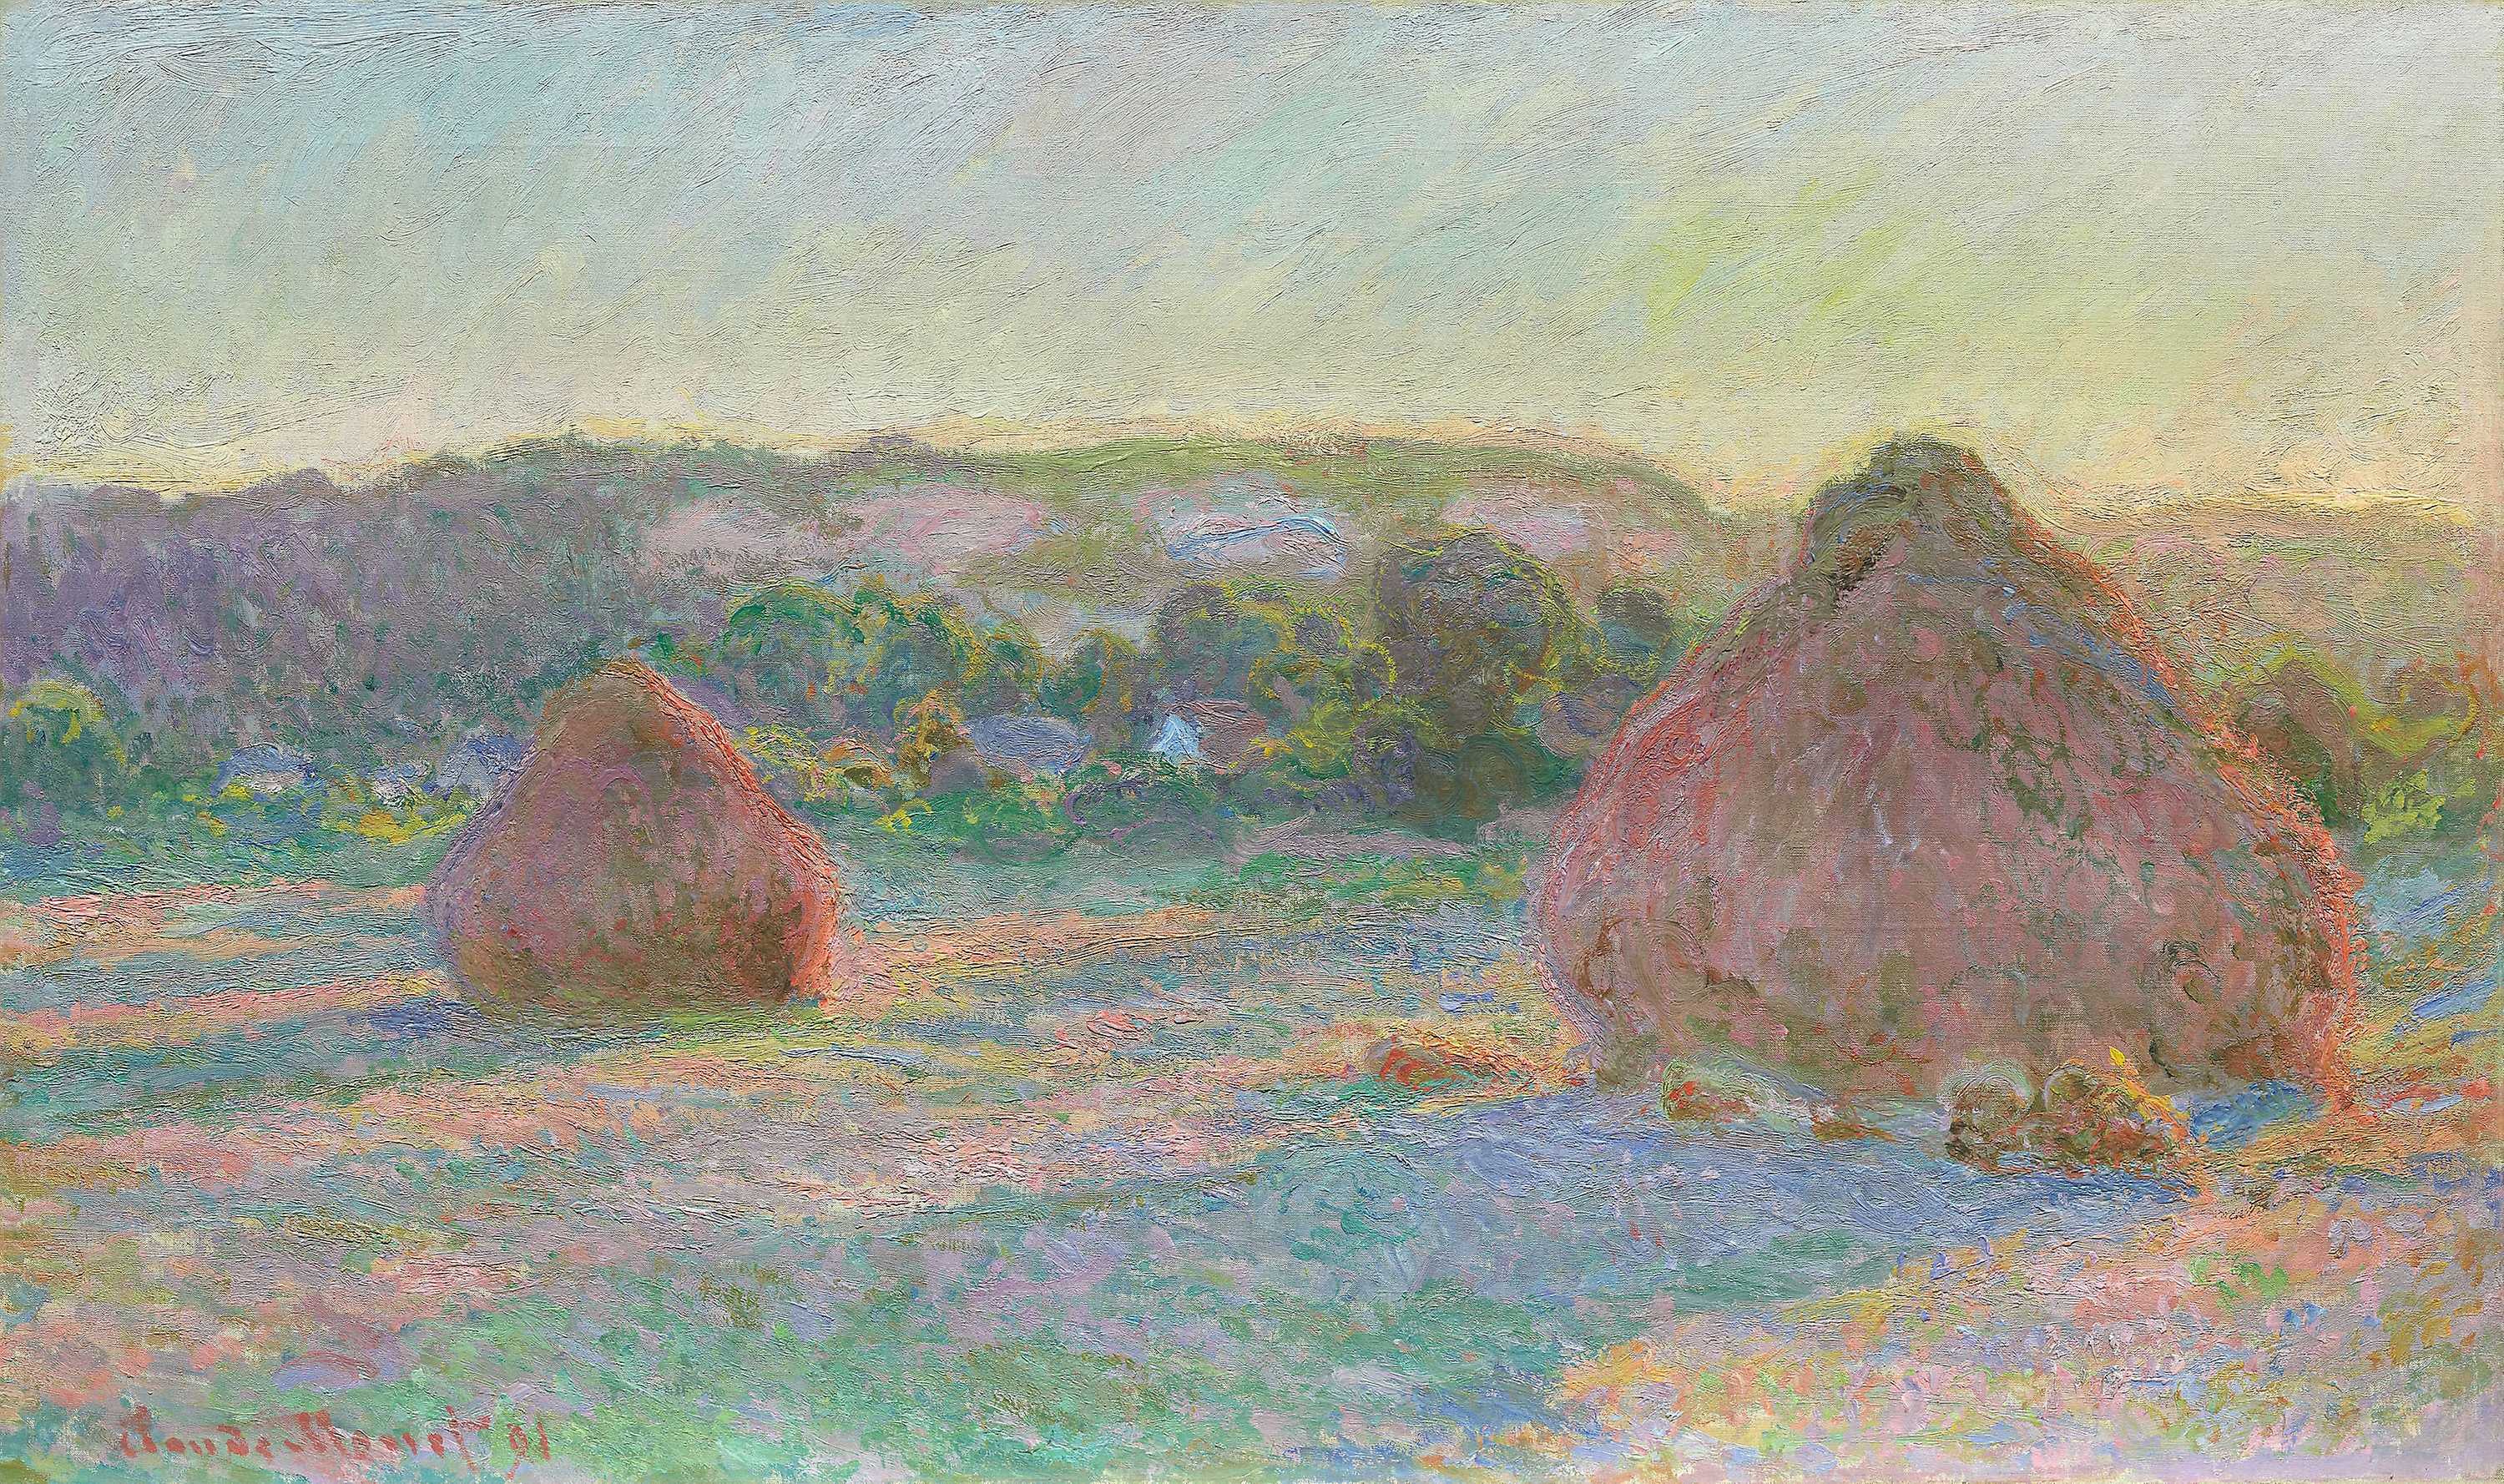 積みわら、夏の終わり by Claude Monet - 1891年 - 60 x 100.5 cm 